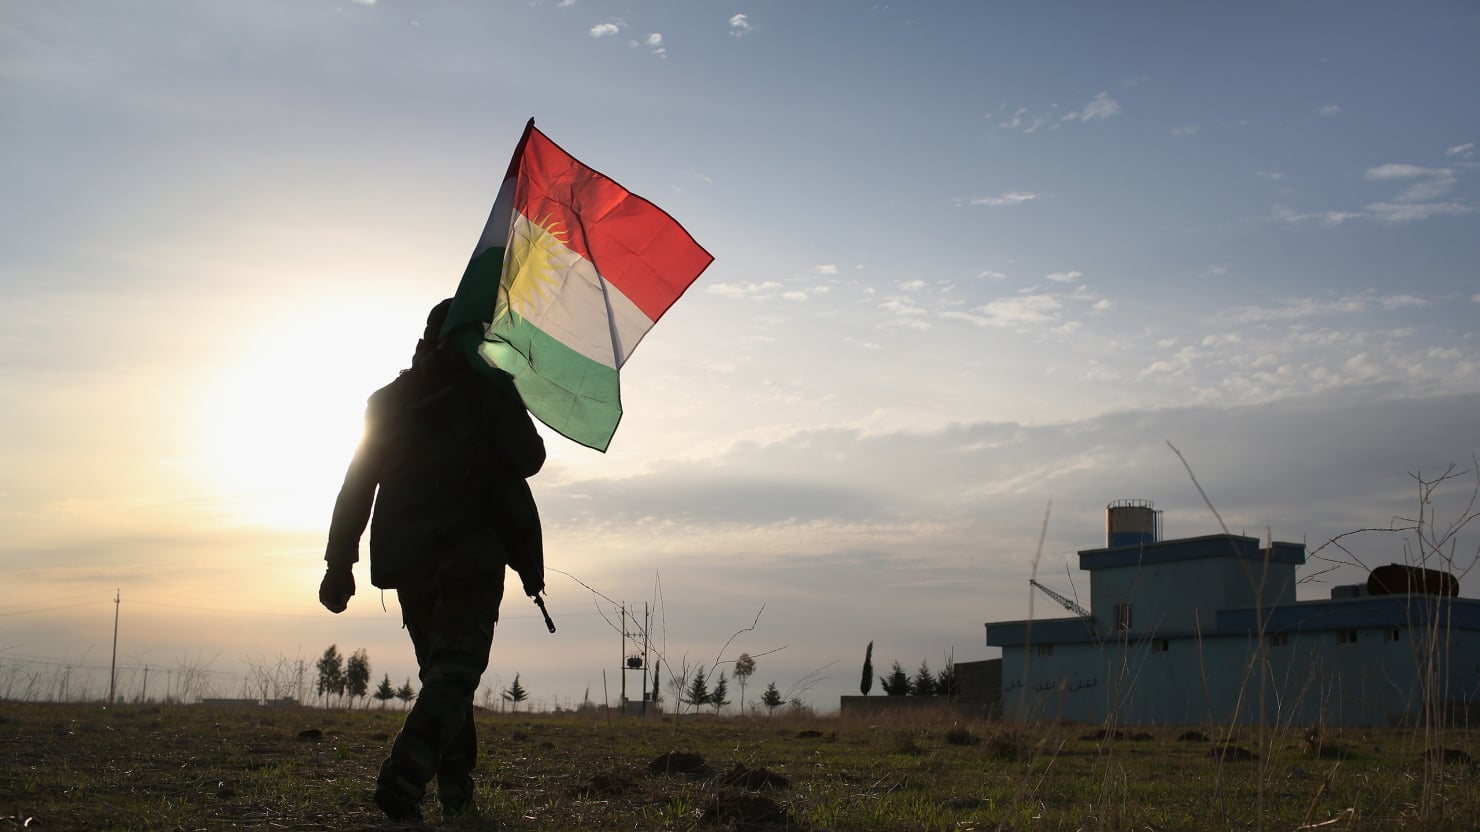 Kurdistán: entre sueños y desgracias